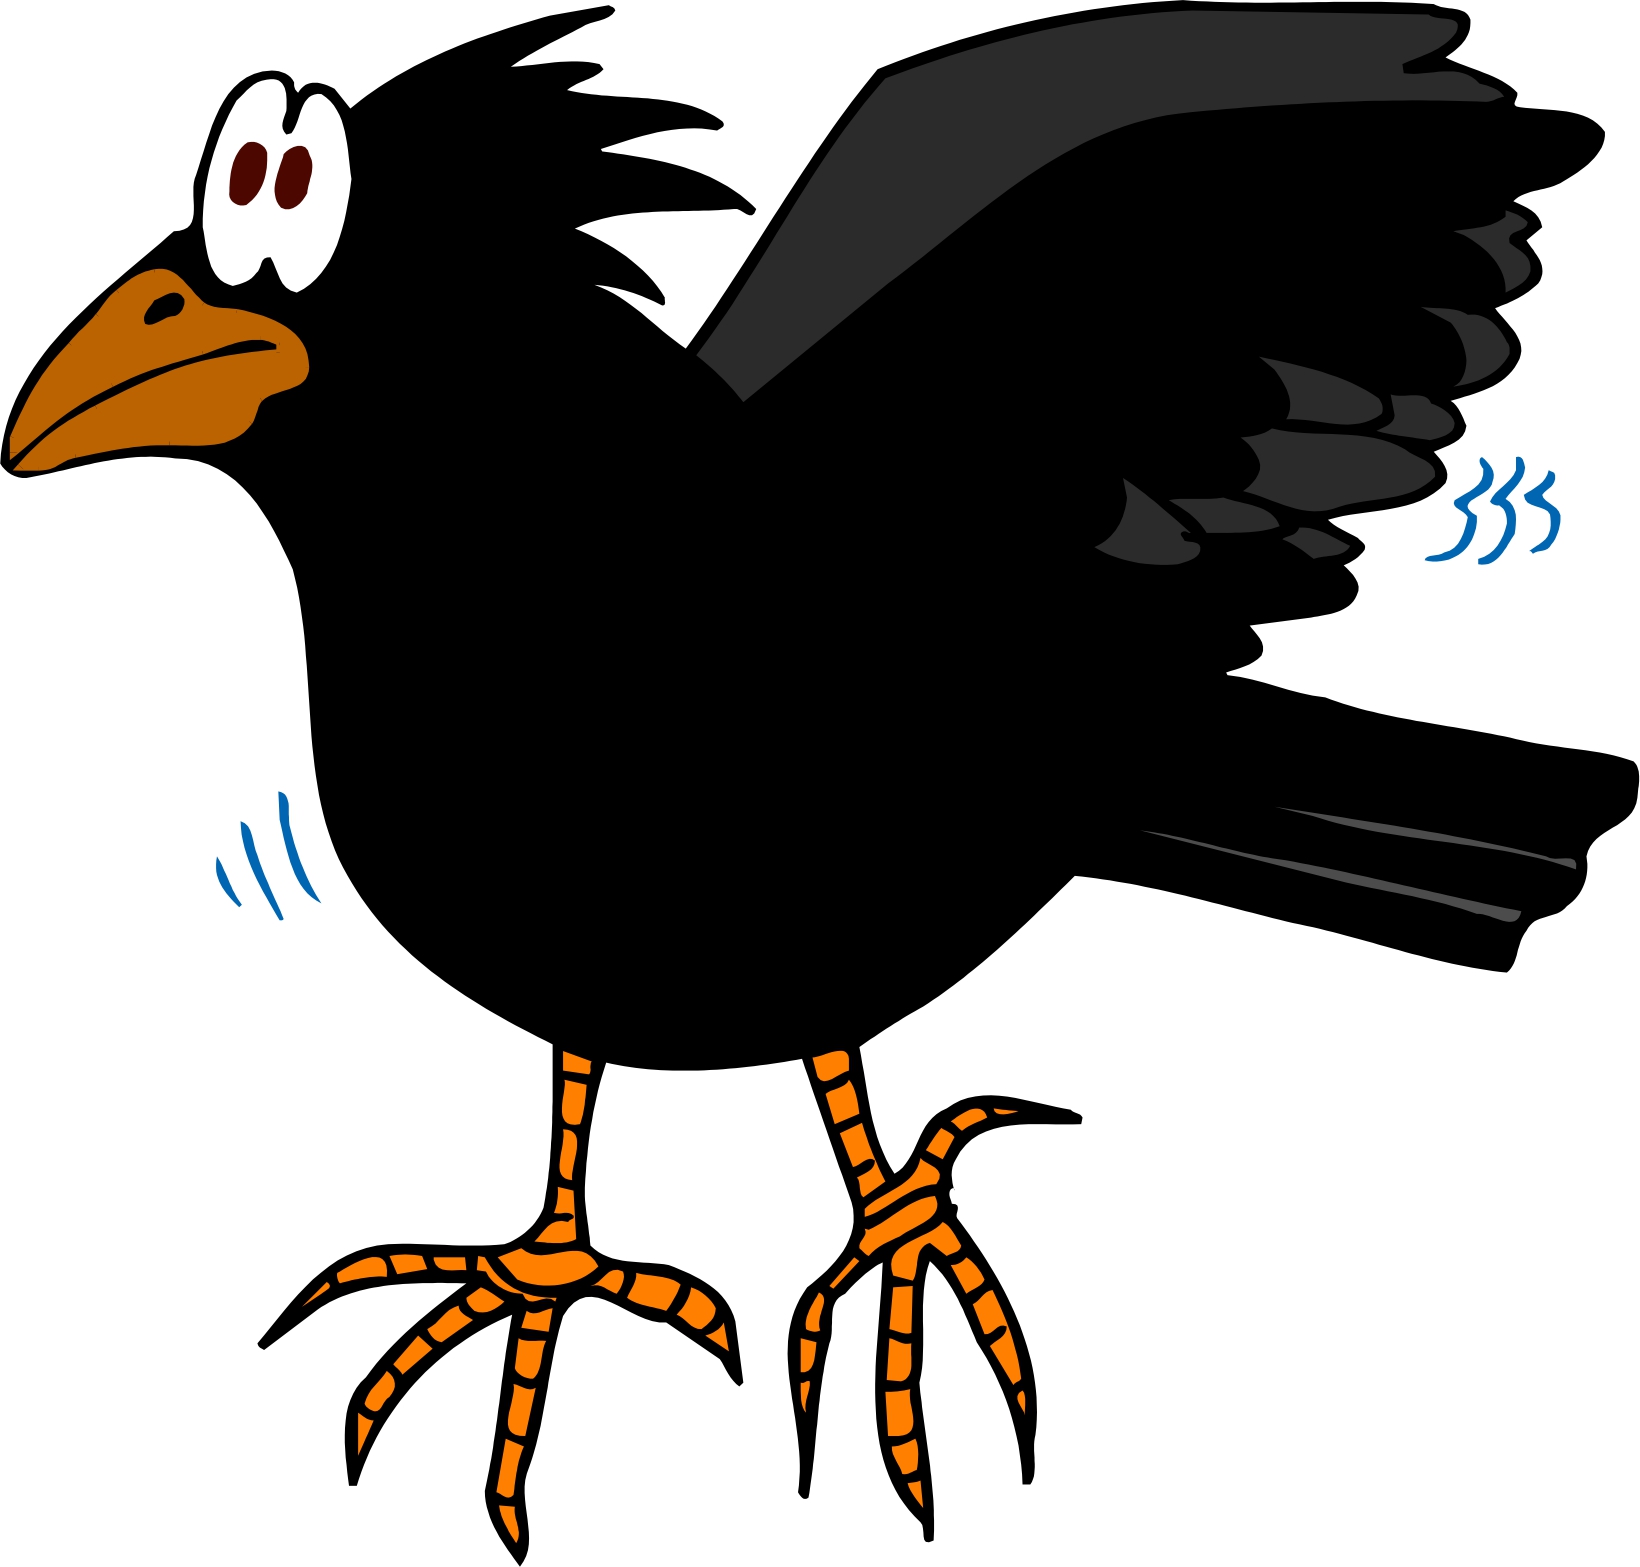 crow clipart cartoon